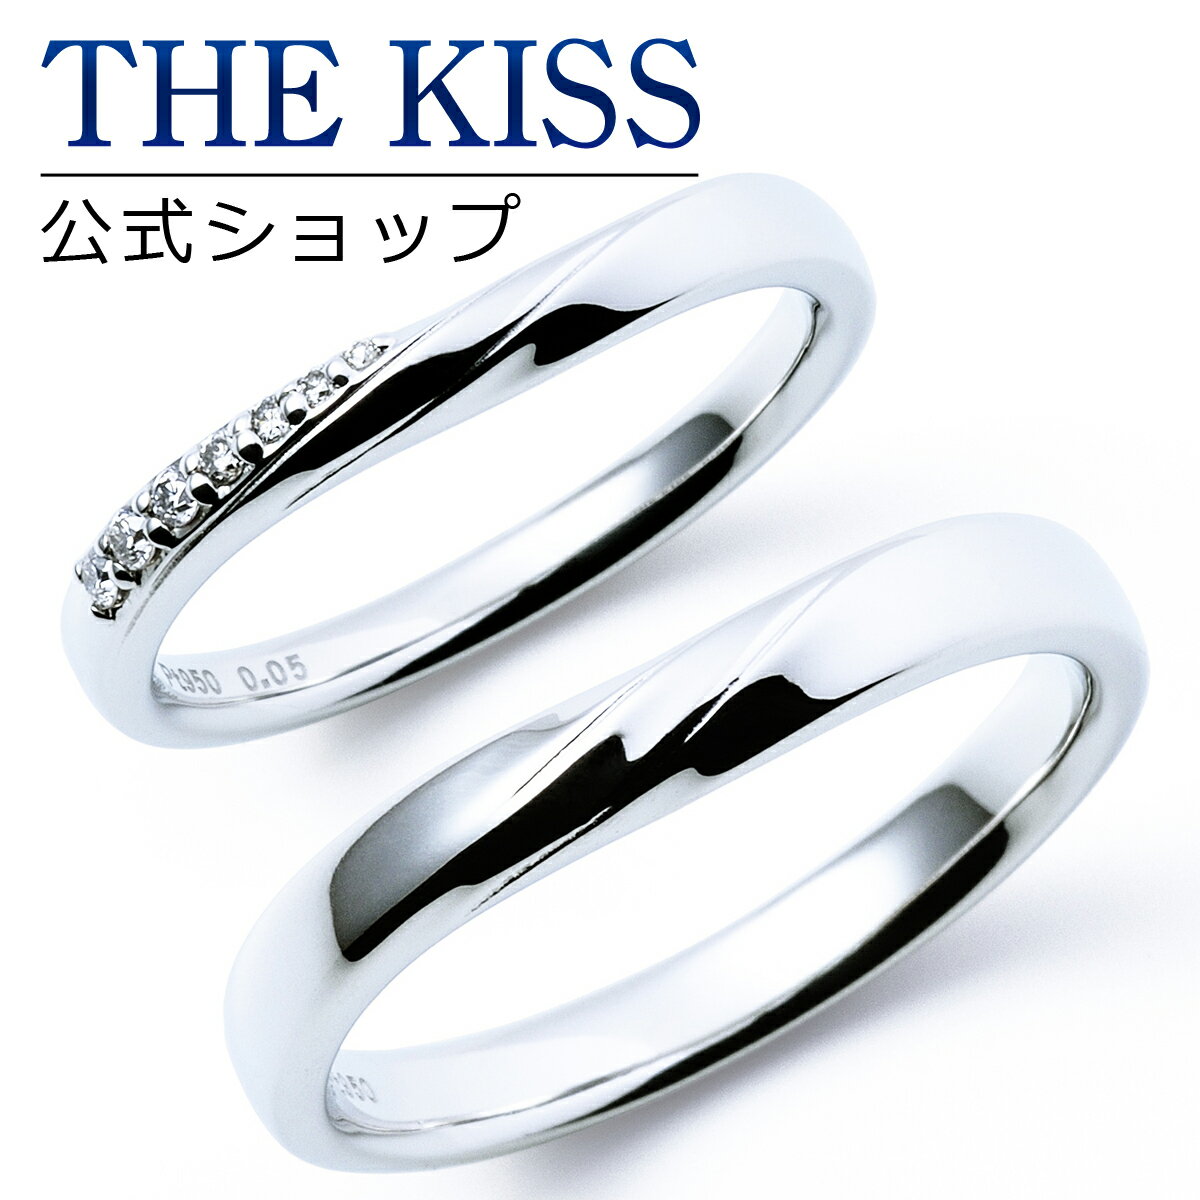 【ラッピング無料】【刻印無料】【THE KISS Anniversary】 プラチナ マリッジ リング 結婚指輪 ペアリング THE KISS ザキッス リング・指輪 7061122131-7061122132 セット シンプル 男性 女性 2個セット ブライダル